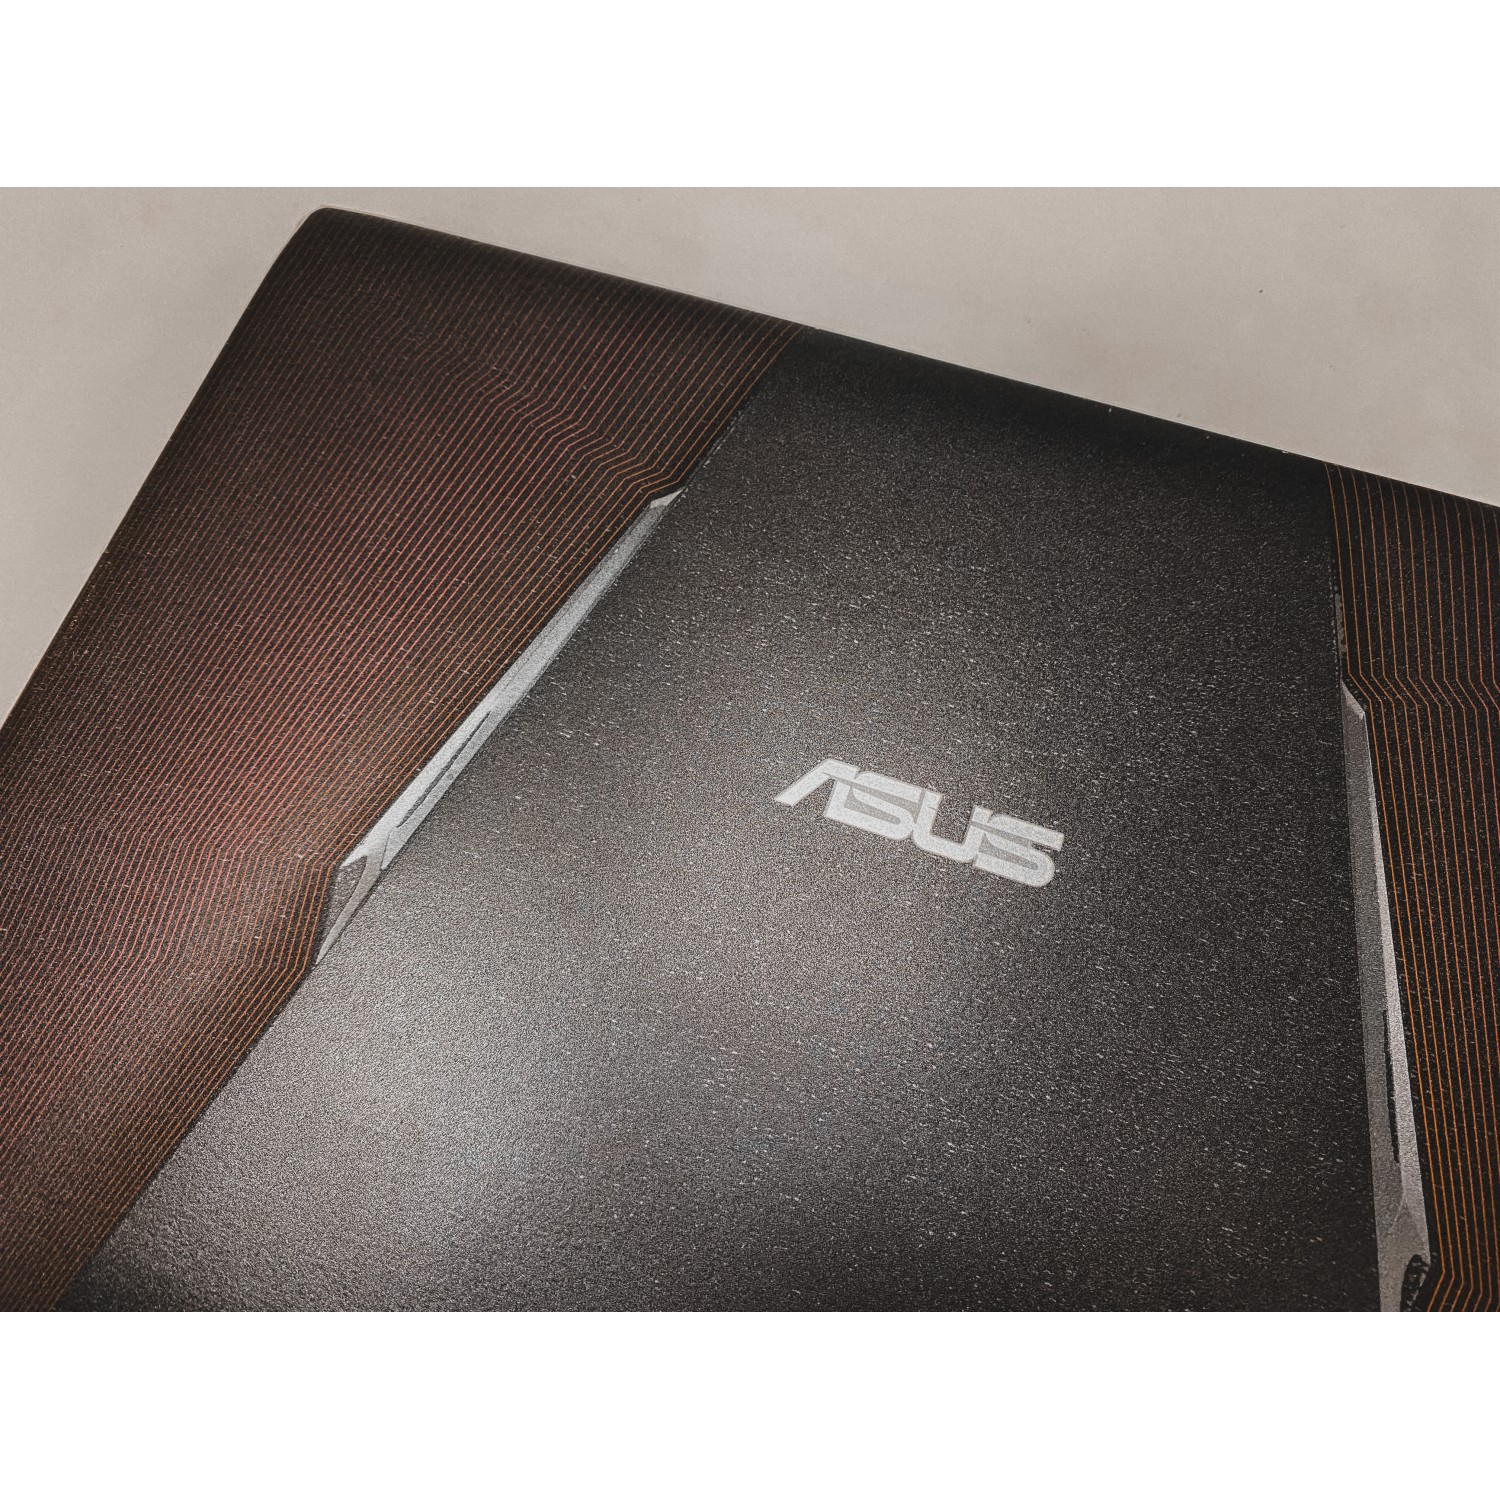 Asus GL552V i5-6300HQ, GTX 960m, 8Gb DDR4, SSD 256Gb, 15.6" Full HD IPS